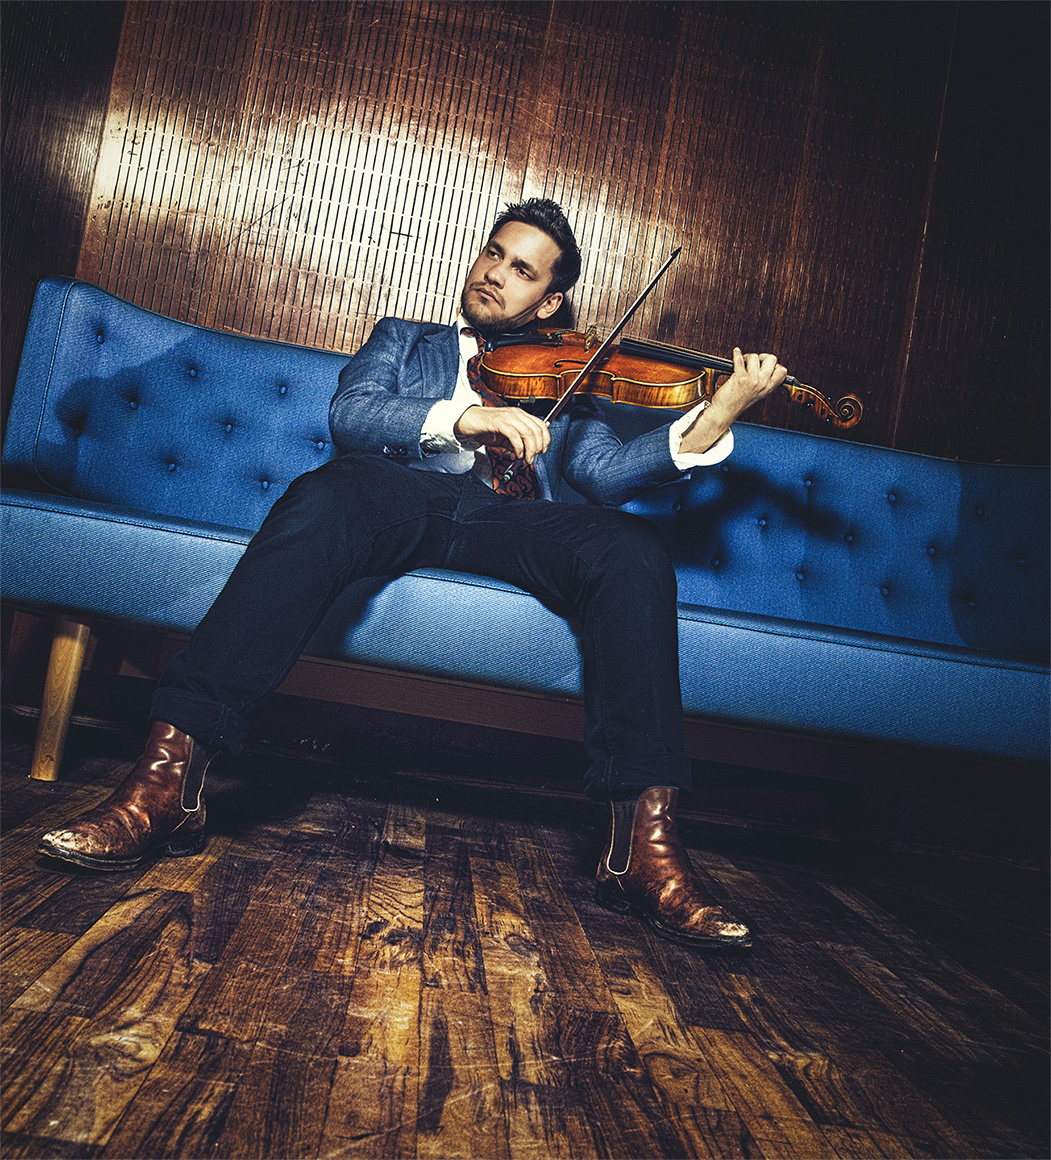 Violin artist Daniel Eklund